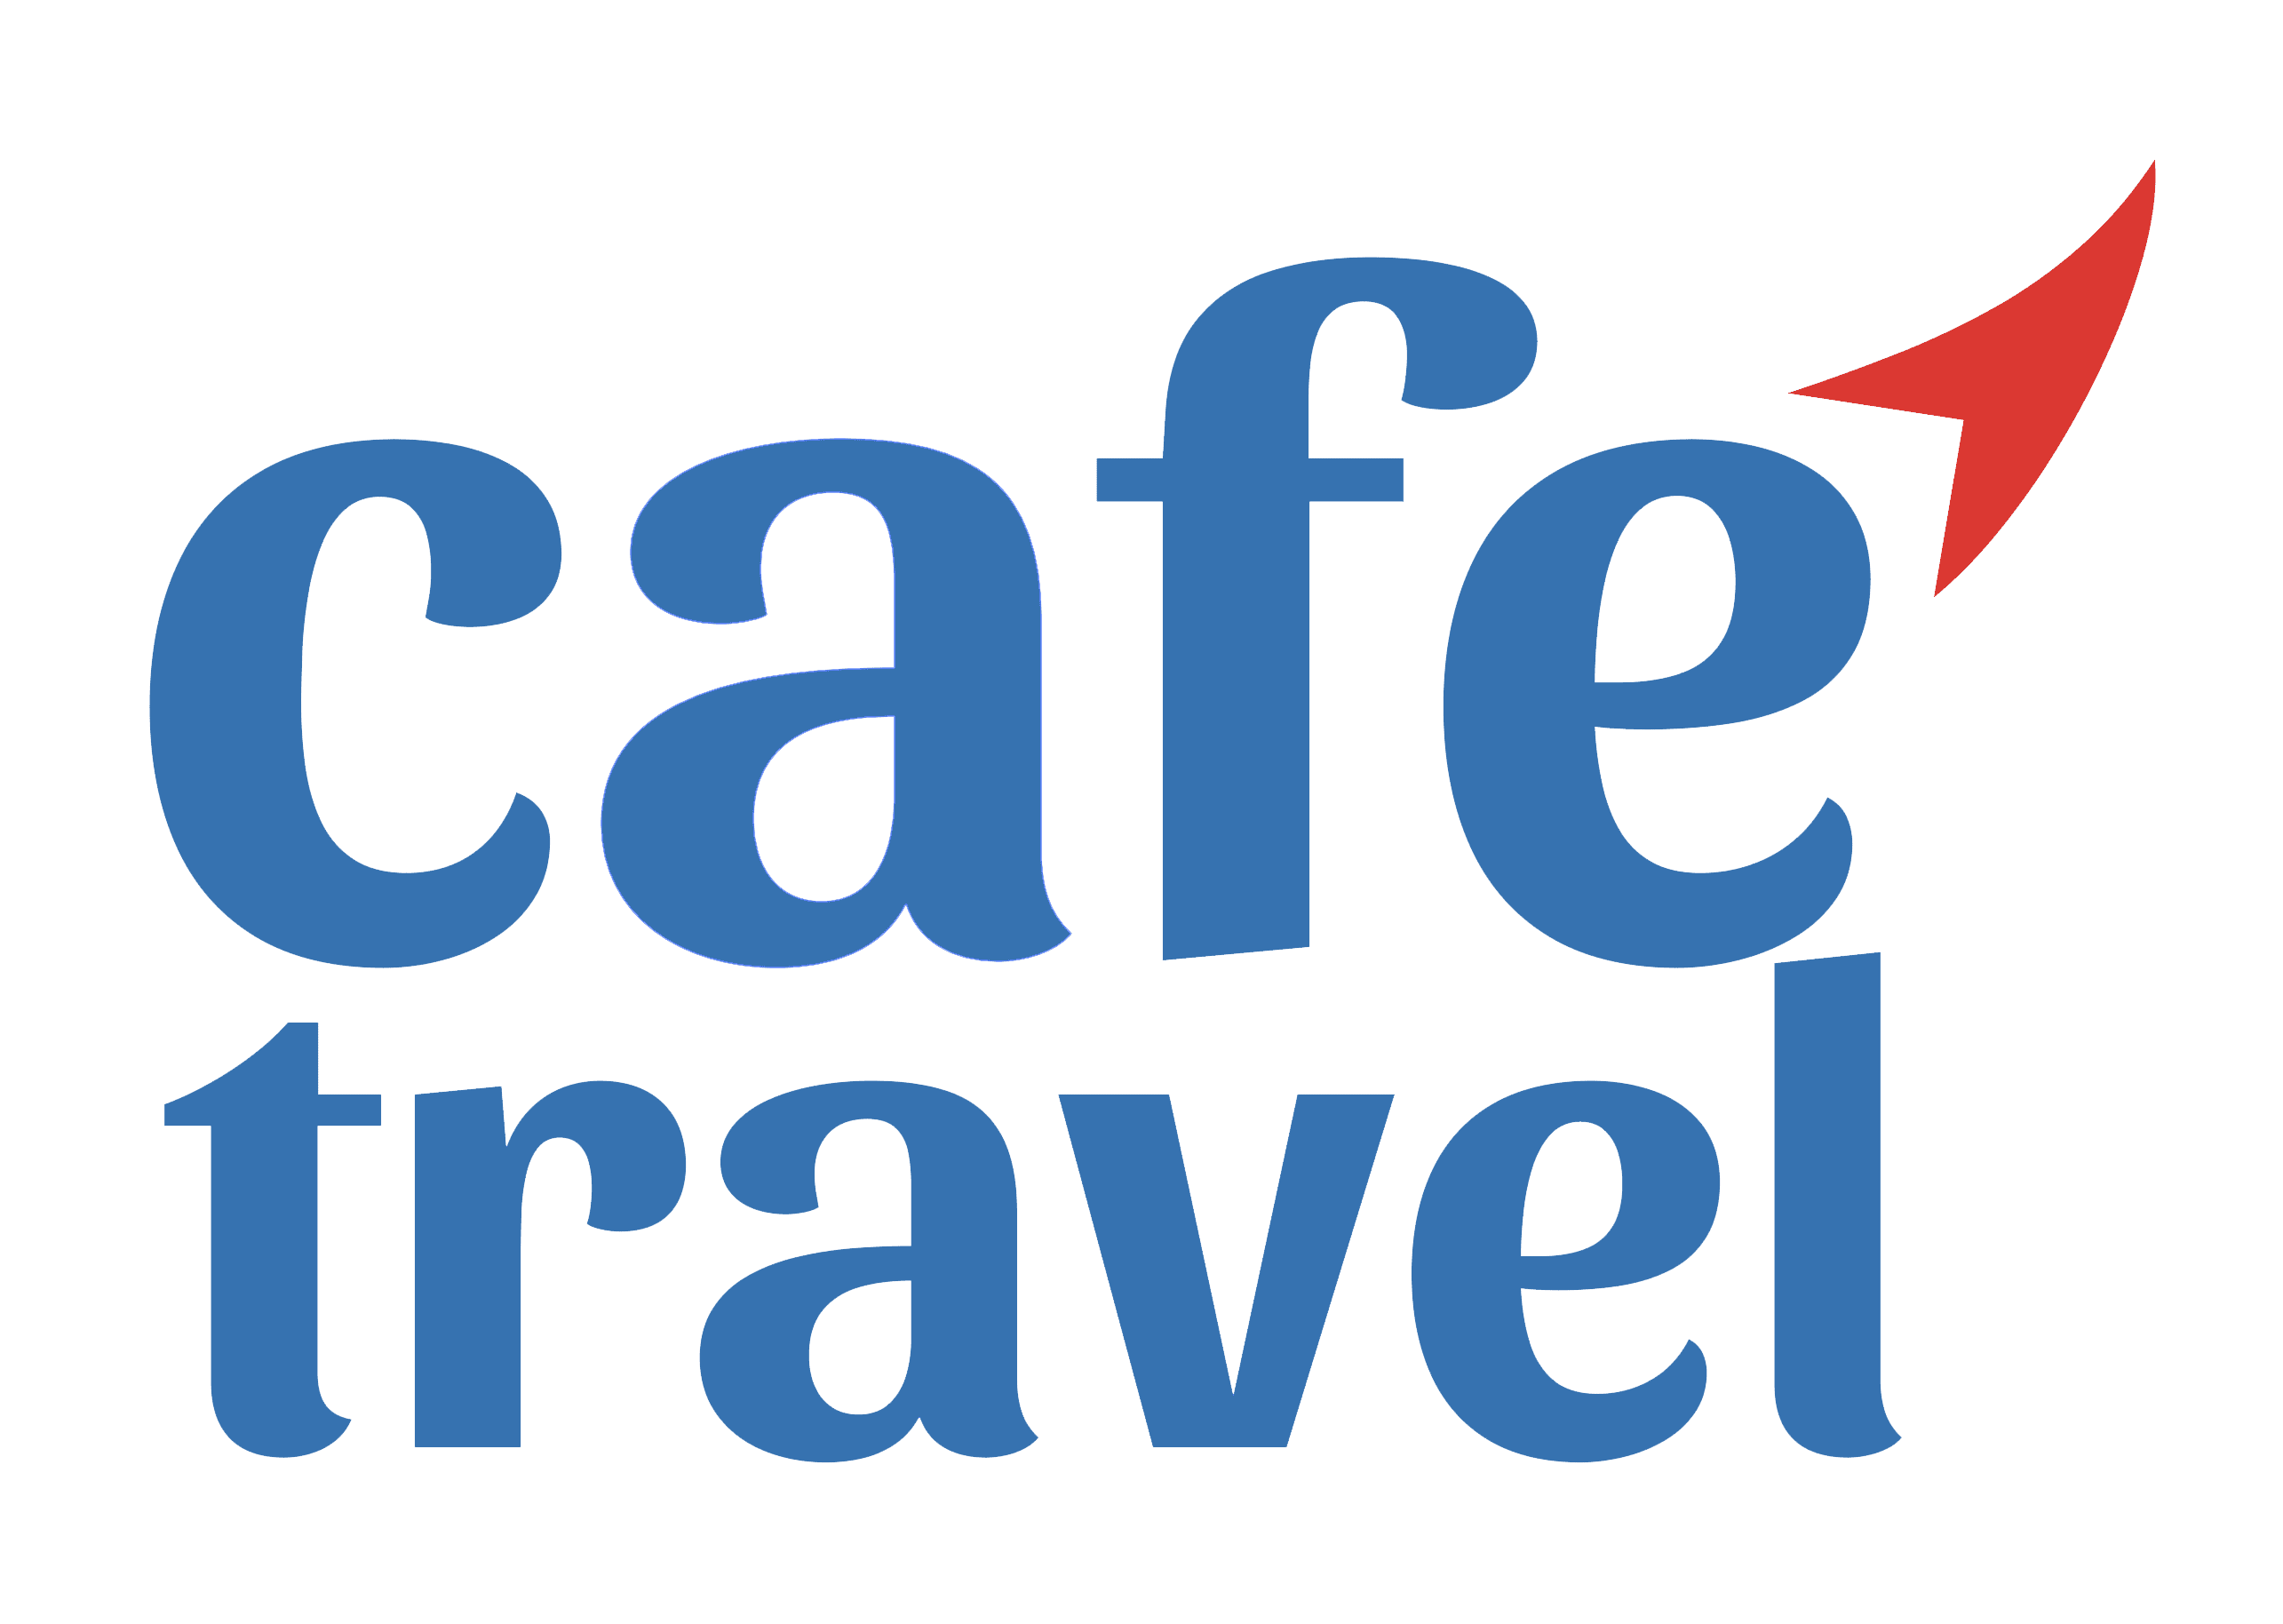 Café Travel